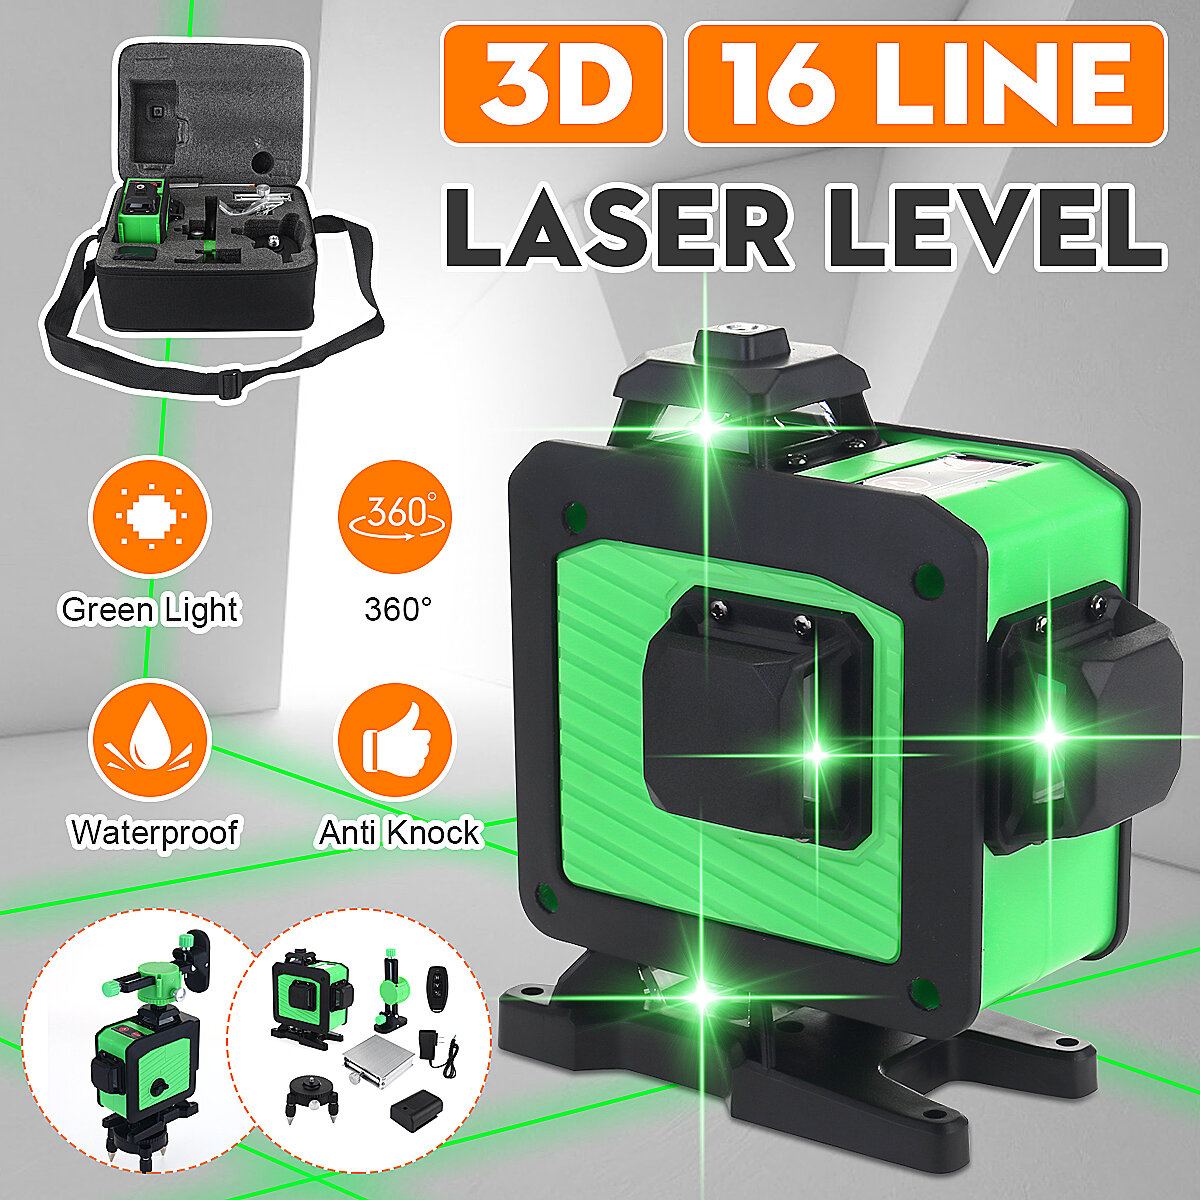 Poziomica laserowa 3D 16 linii z EU za $59.99 / ~242zł